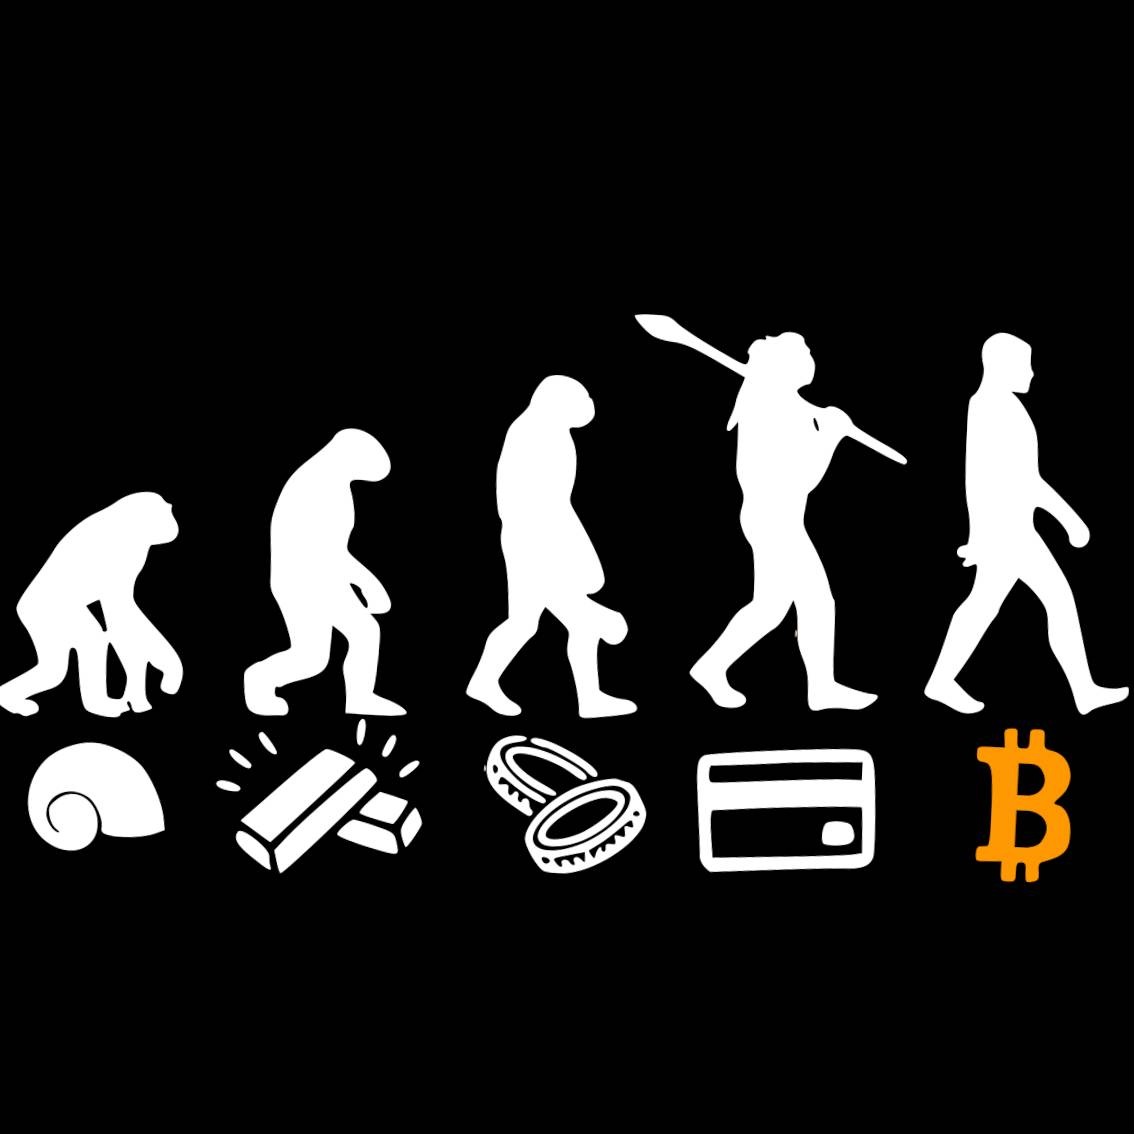 Evo Logo - BTC - Bitcoin - Thumbnail - Taiwan Crypto Tshirts